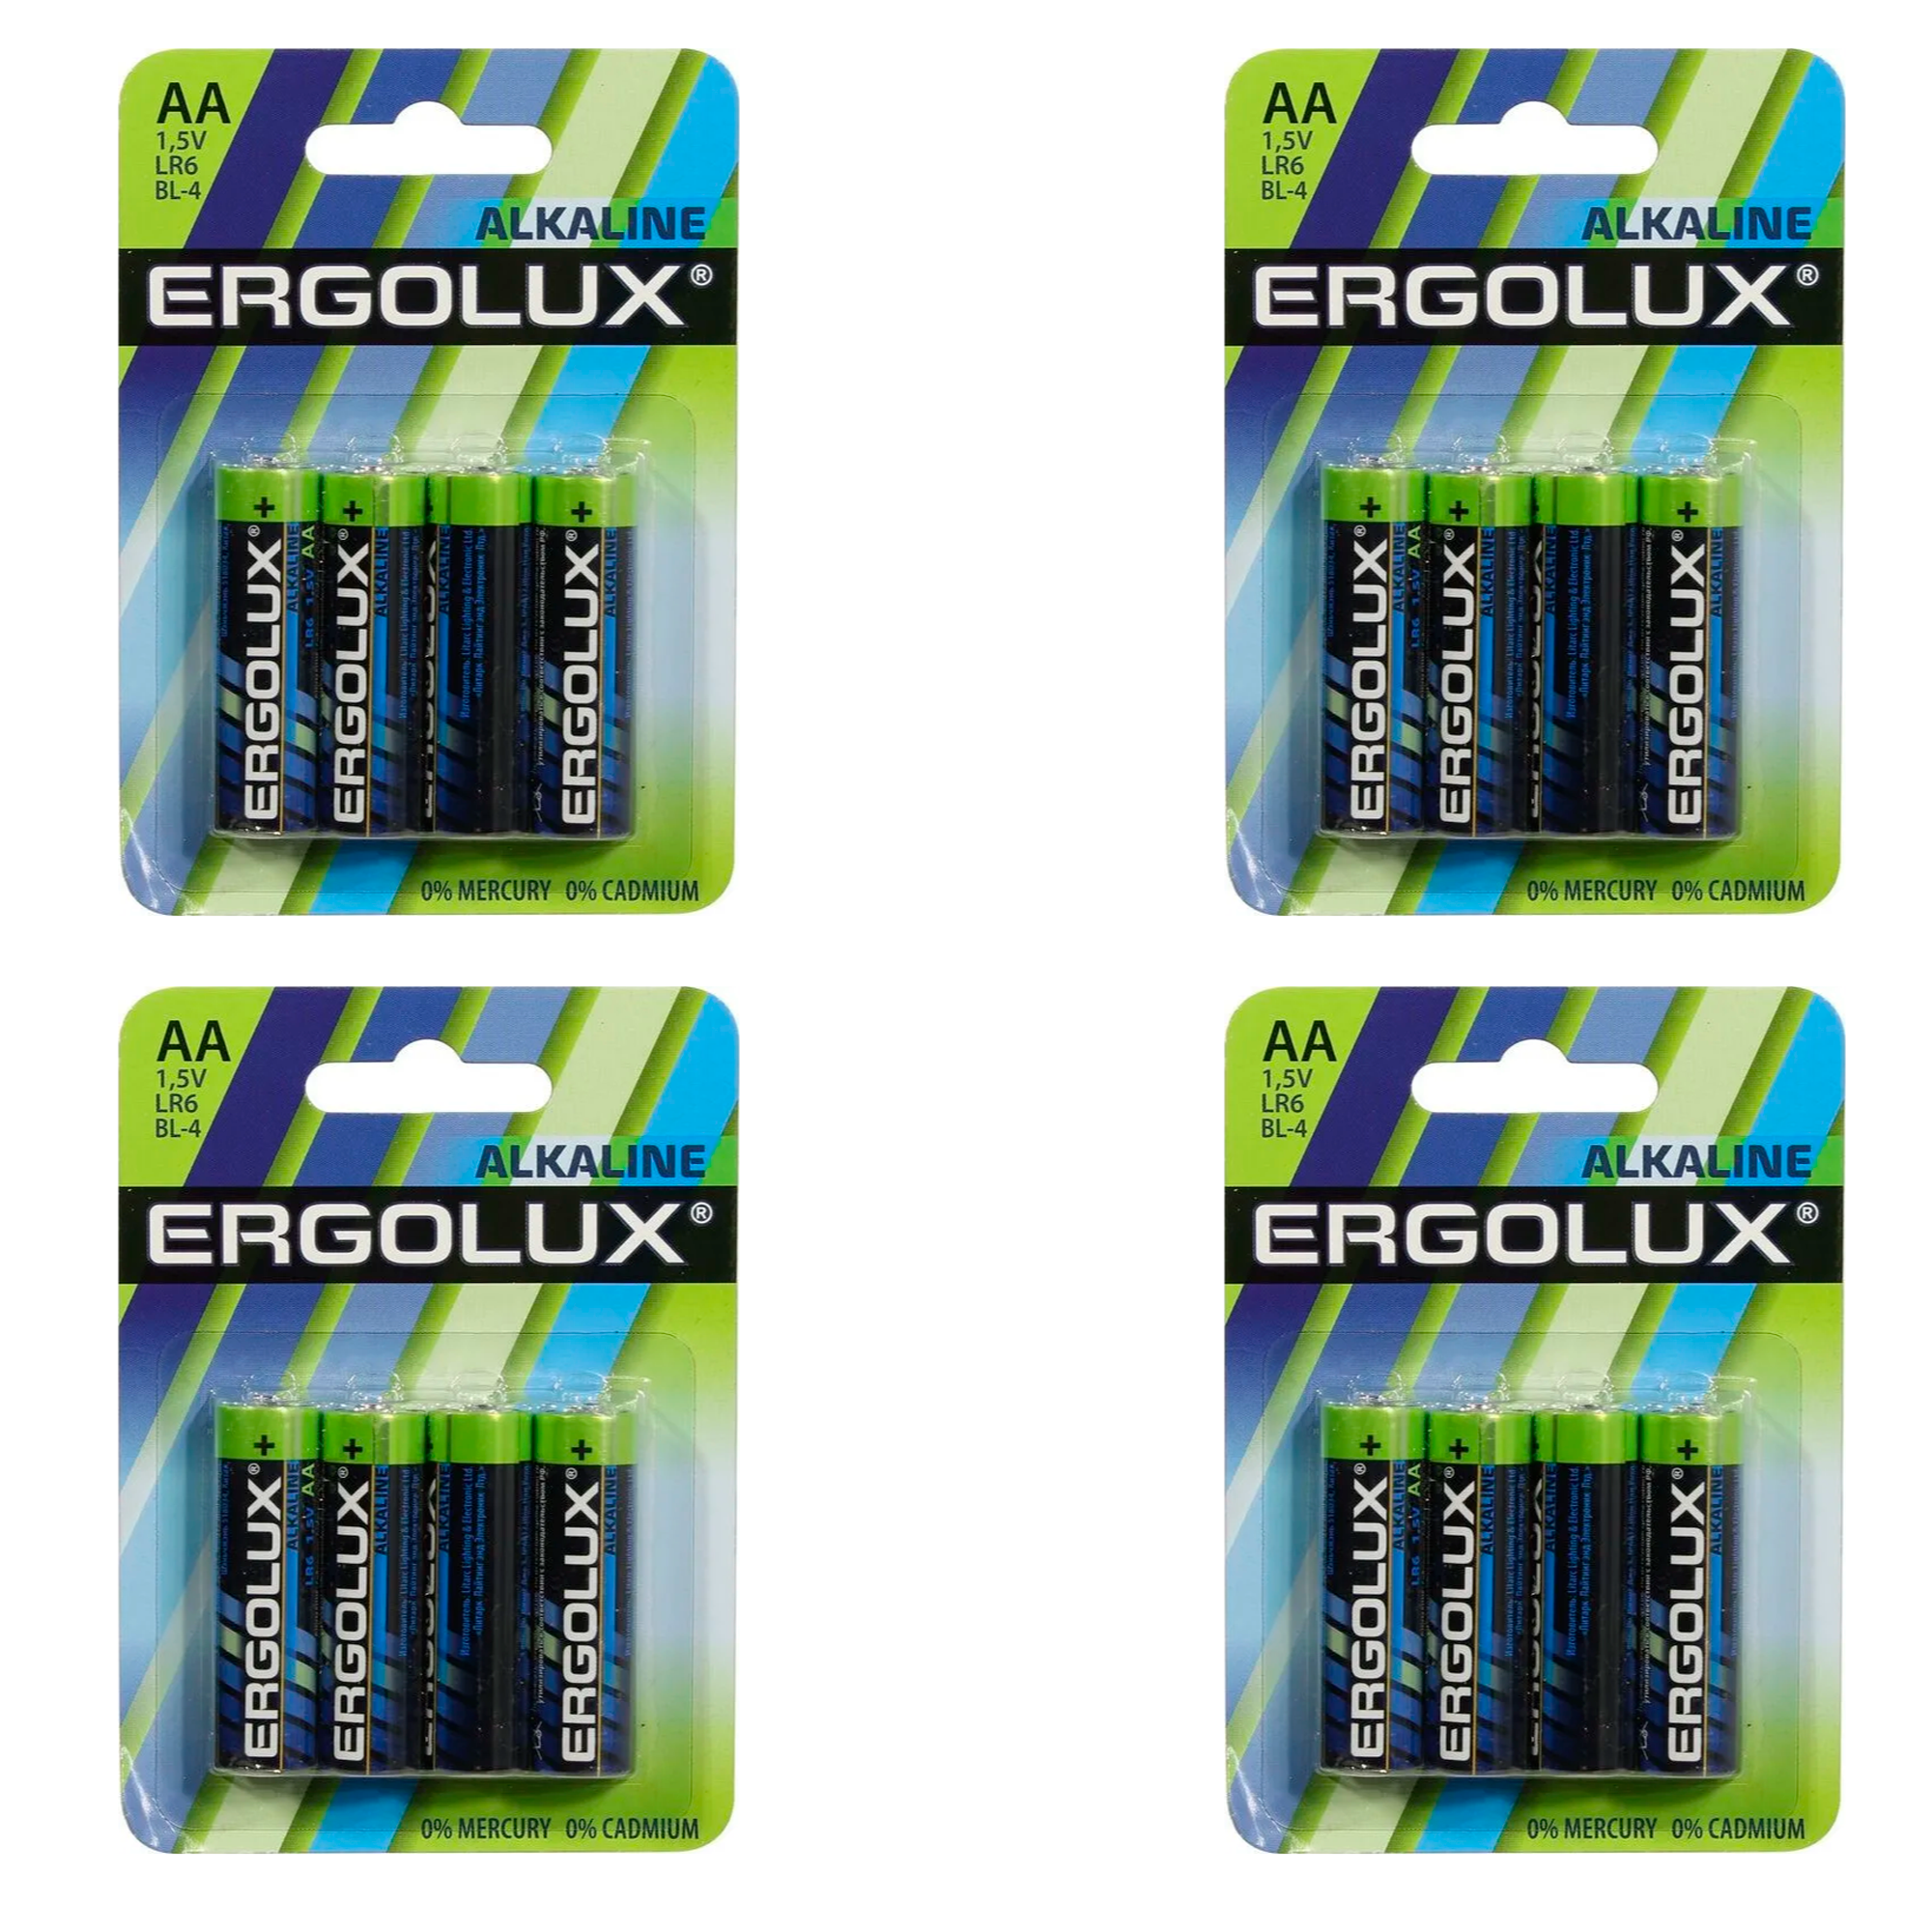 Щелочная батарейка Ergolux Alkaline АА, LR6 BP-4, 1.5 В, 4шт, 4уп батарейка щелочная ergolux alkaline lr03 bp 24 aaa 1 5v 24 шт